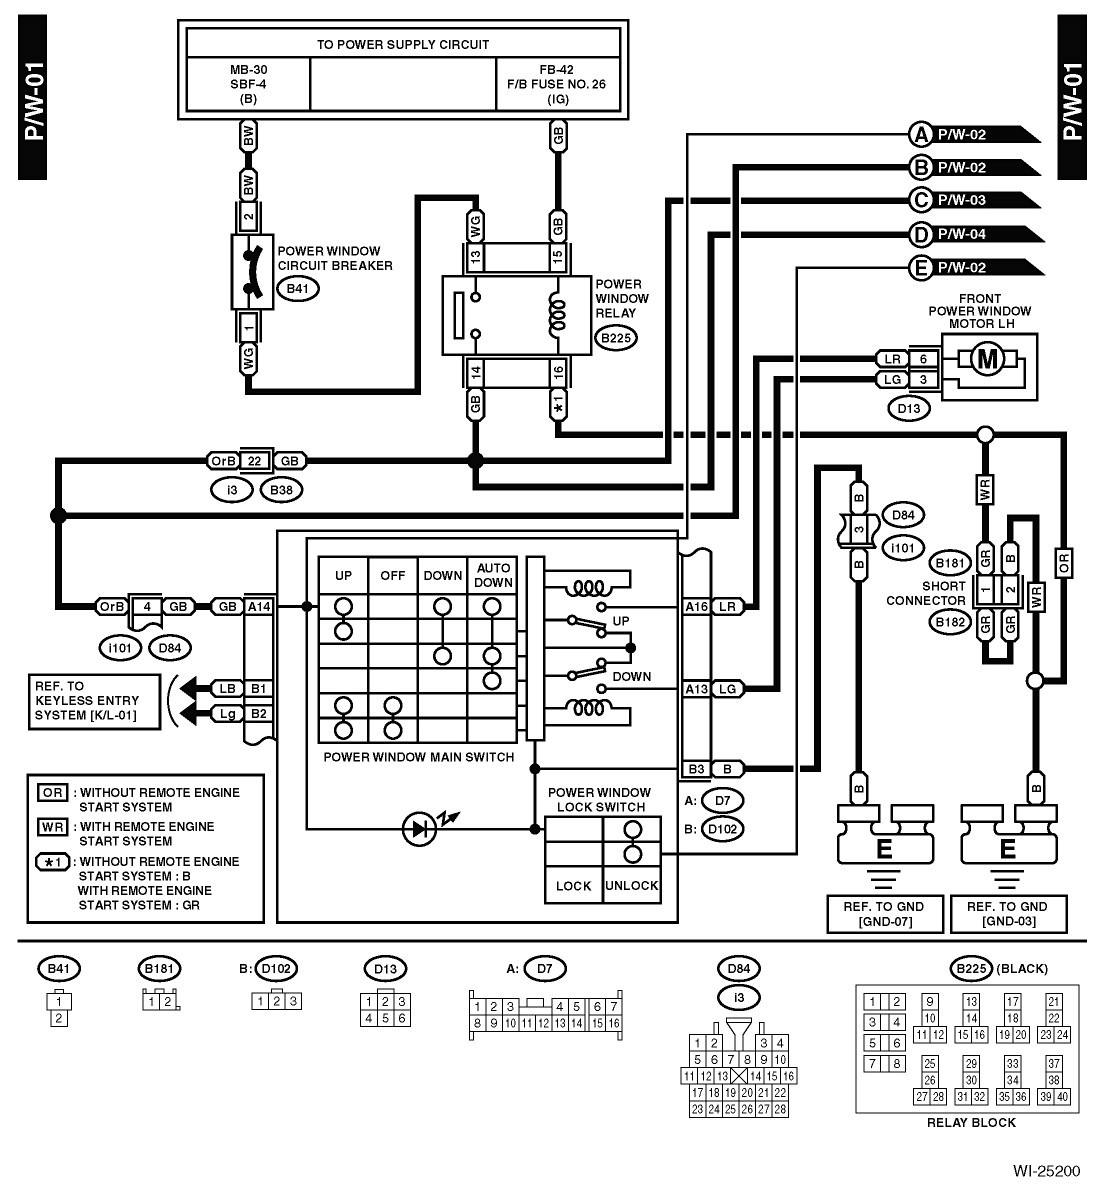 Subaru Mcintosh Wiring Diagram 2009 Subaru forester Wiring Diagram Wire Center U2022 Rh Daniablub Co